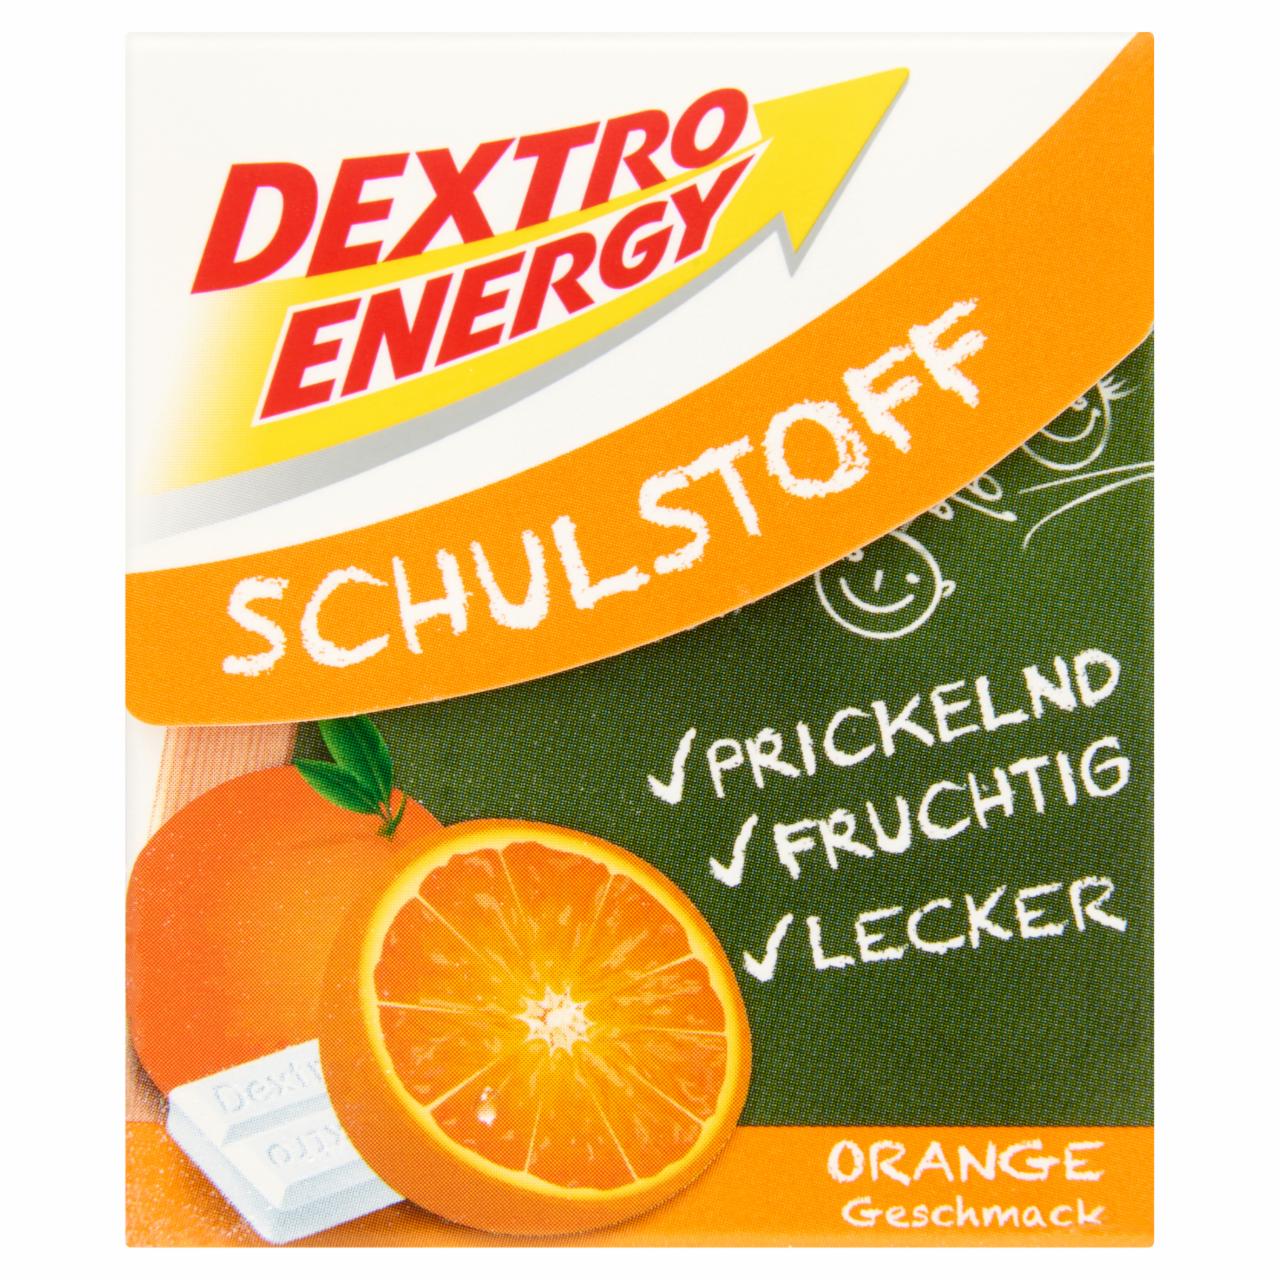 Képek - Dextro Energy energiát adó narancs ízesítésű szőlőcukor tabletták 50 g